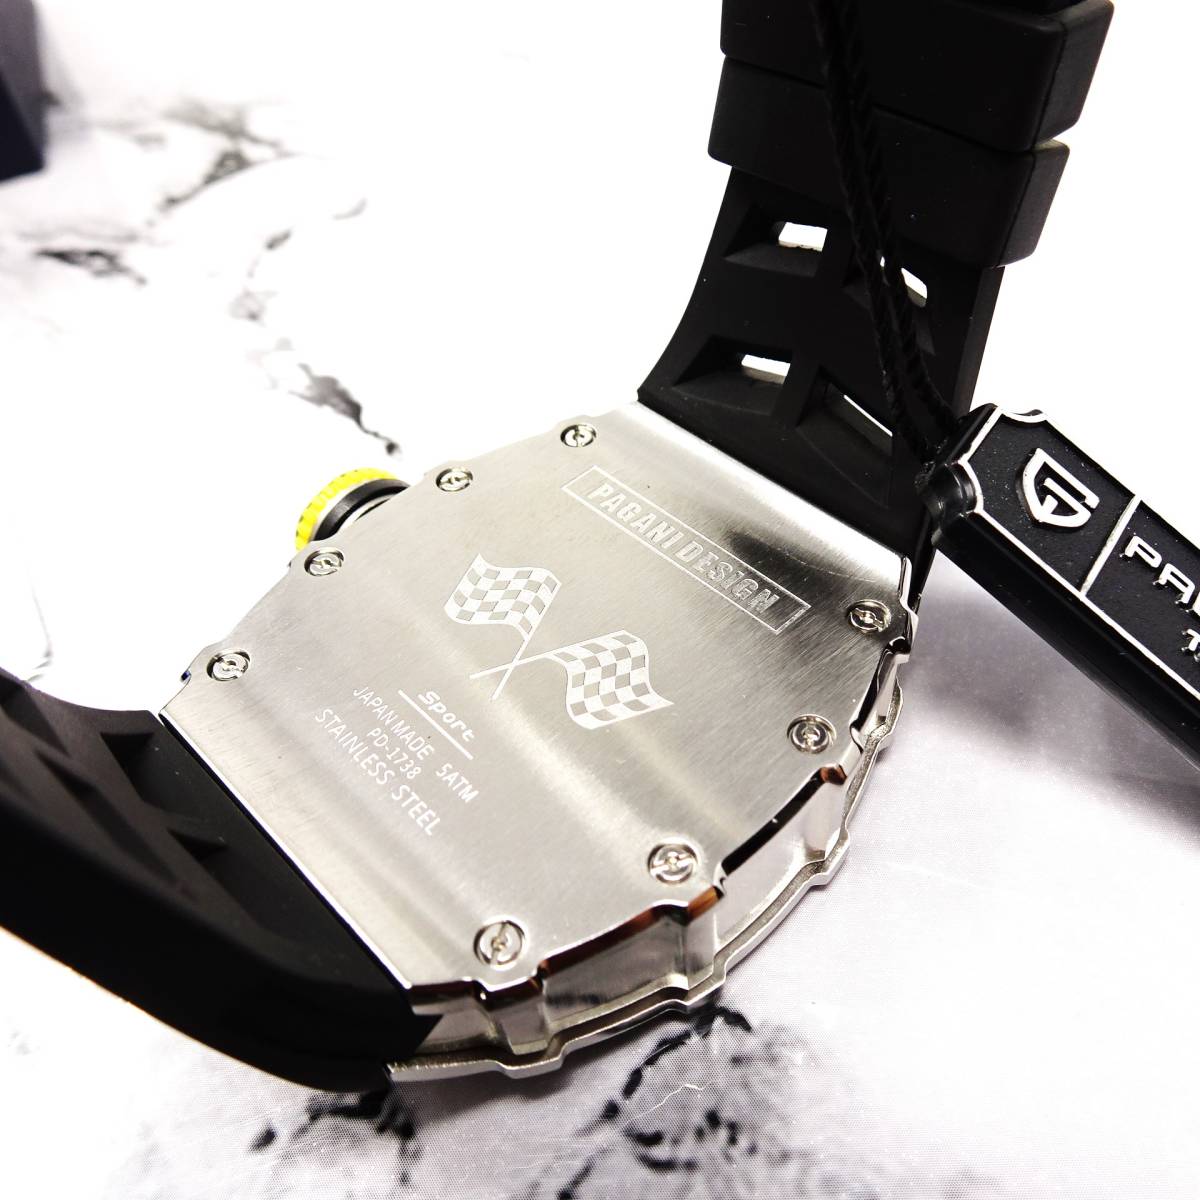 送料無料・新品・PAGANI DESIGNパガーニデザイン・メンズクォーツ腕時計、VH65・トノー型スケルトン文字盤モデルPD-1738 _画像7